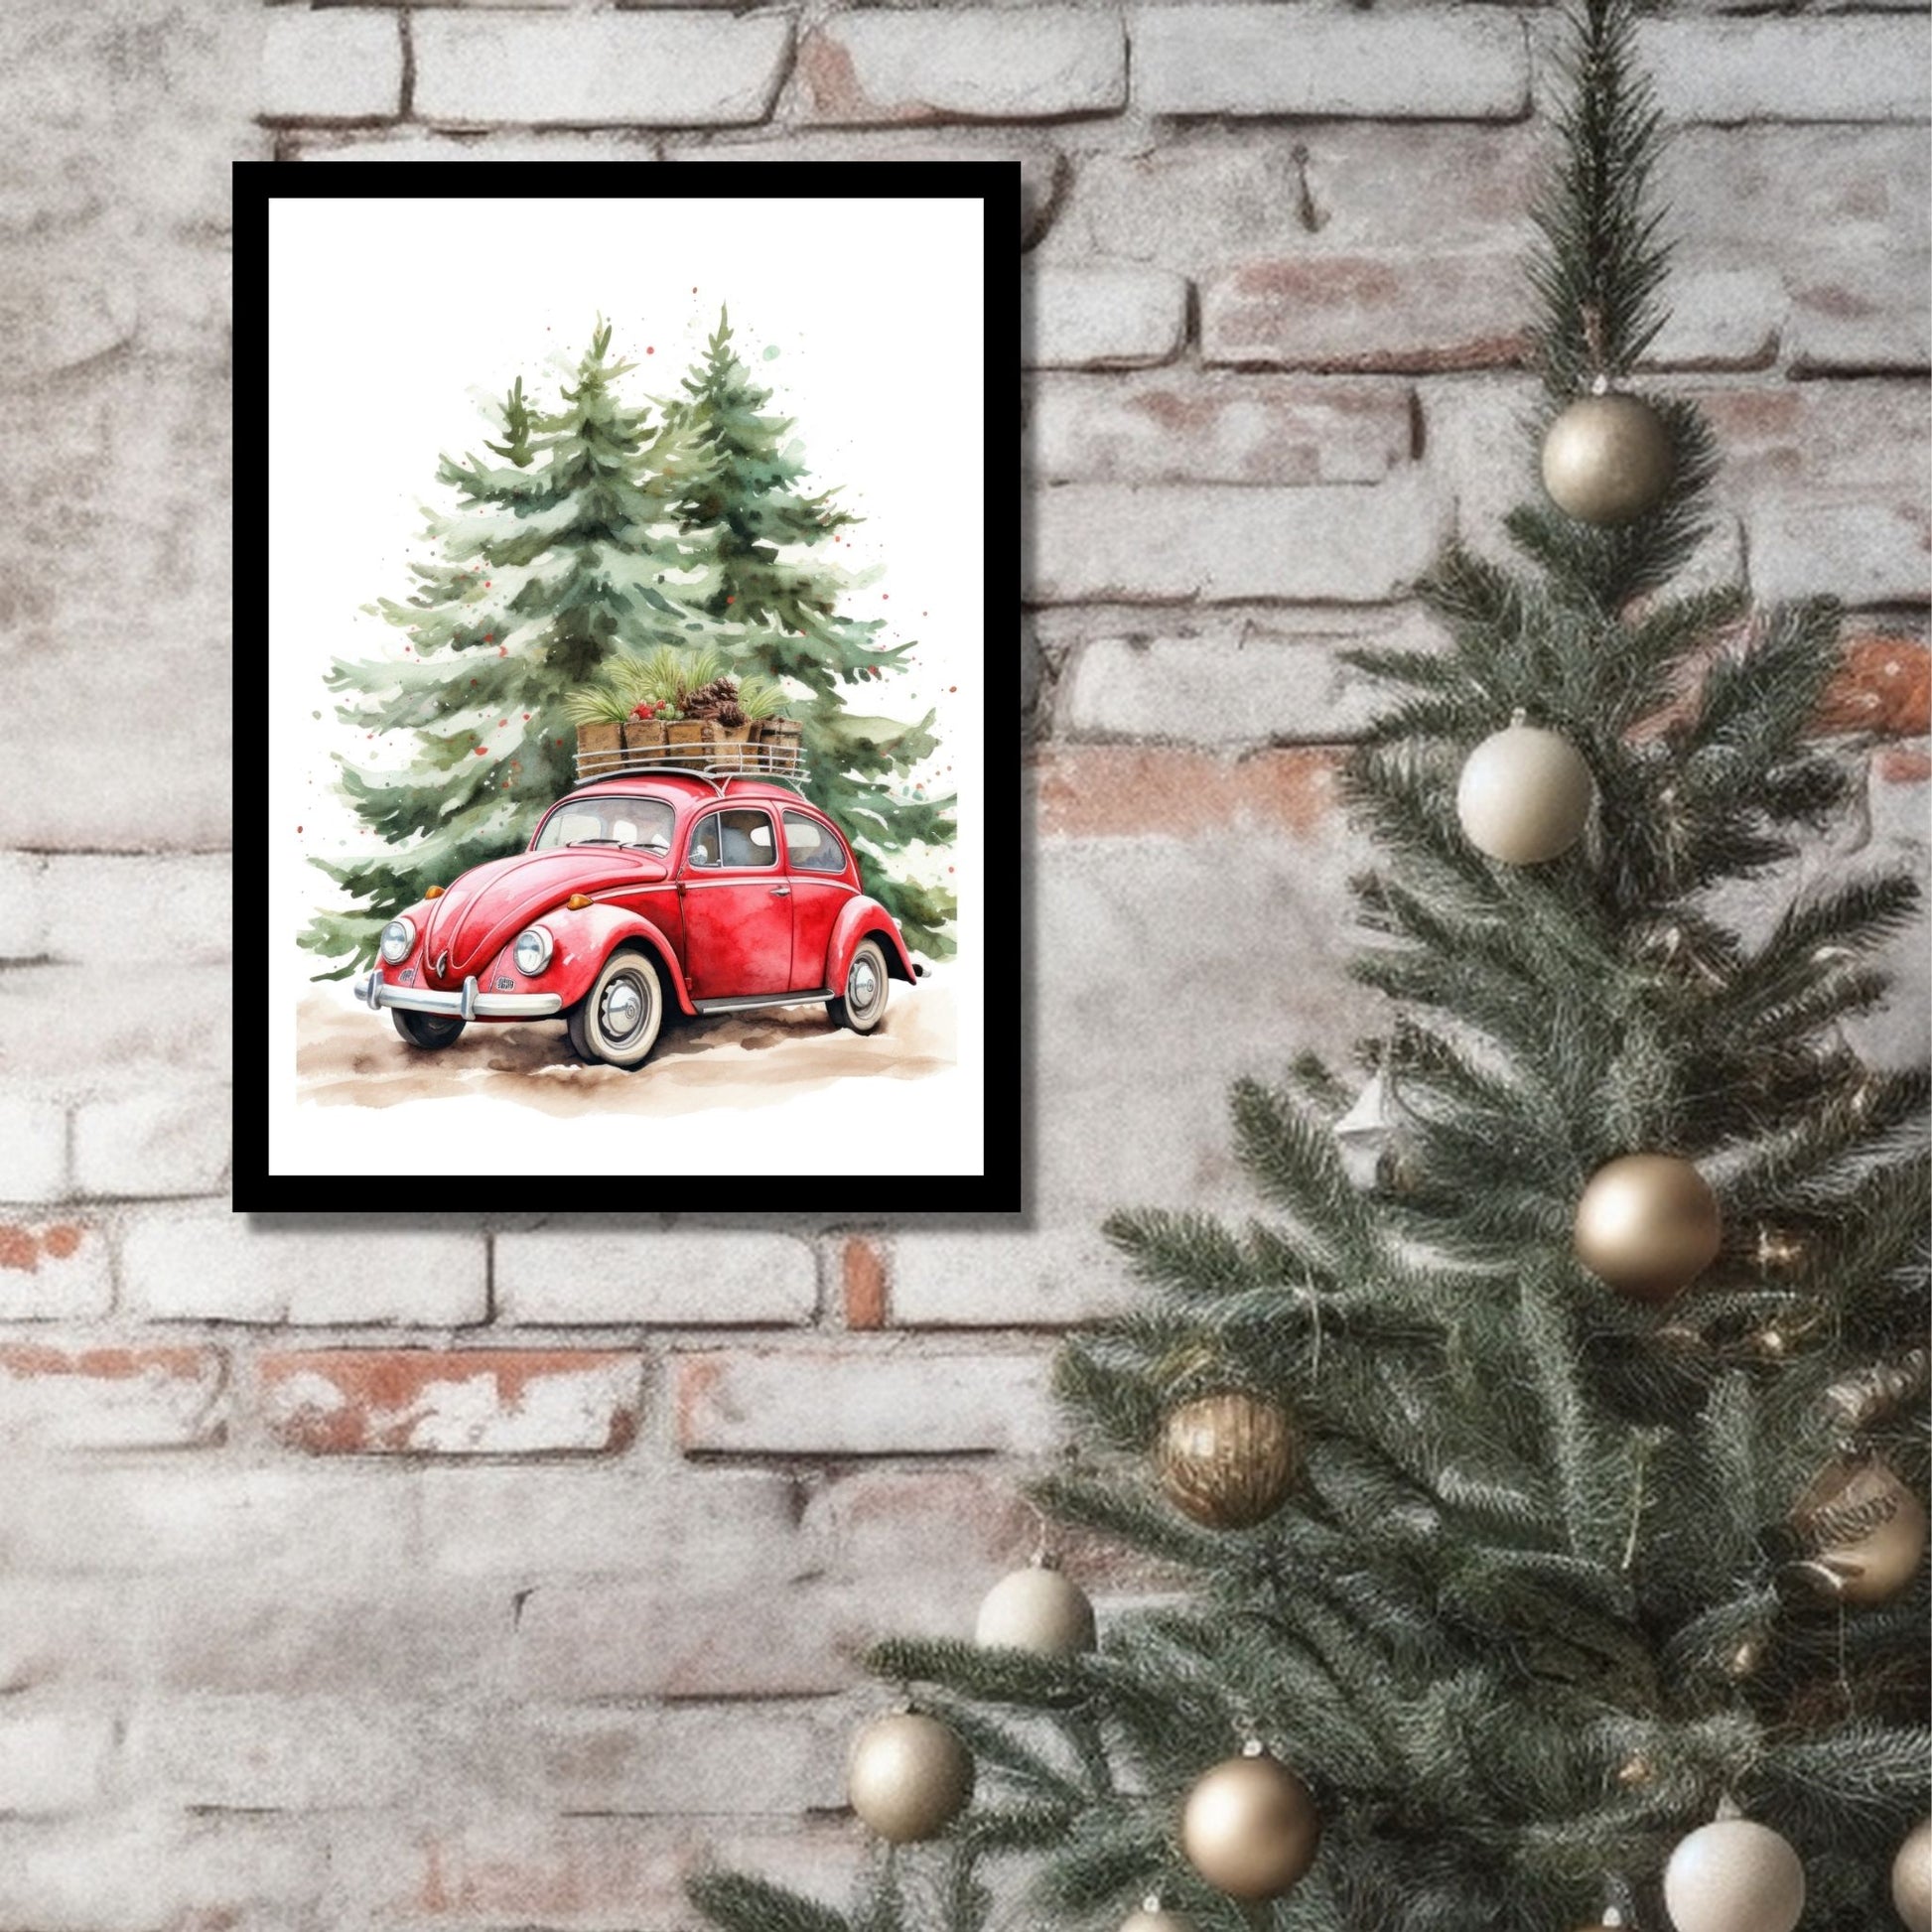 Plakat og lerret med grafisk julemotiv av gammel, rød volkswagen boble. Bilen kjører i en skog, og på taket er den lastet med juledekorasjoner. På bildet henger motivet som plakaten i en sort ramme på en murvegg ved siden av et juletre.